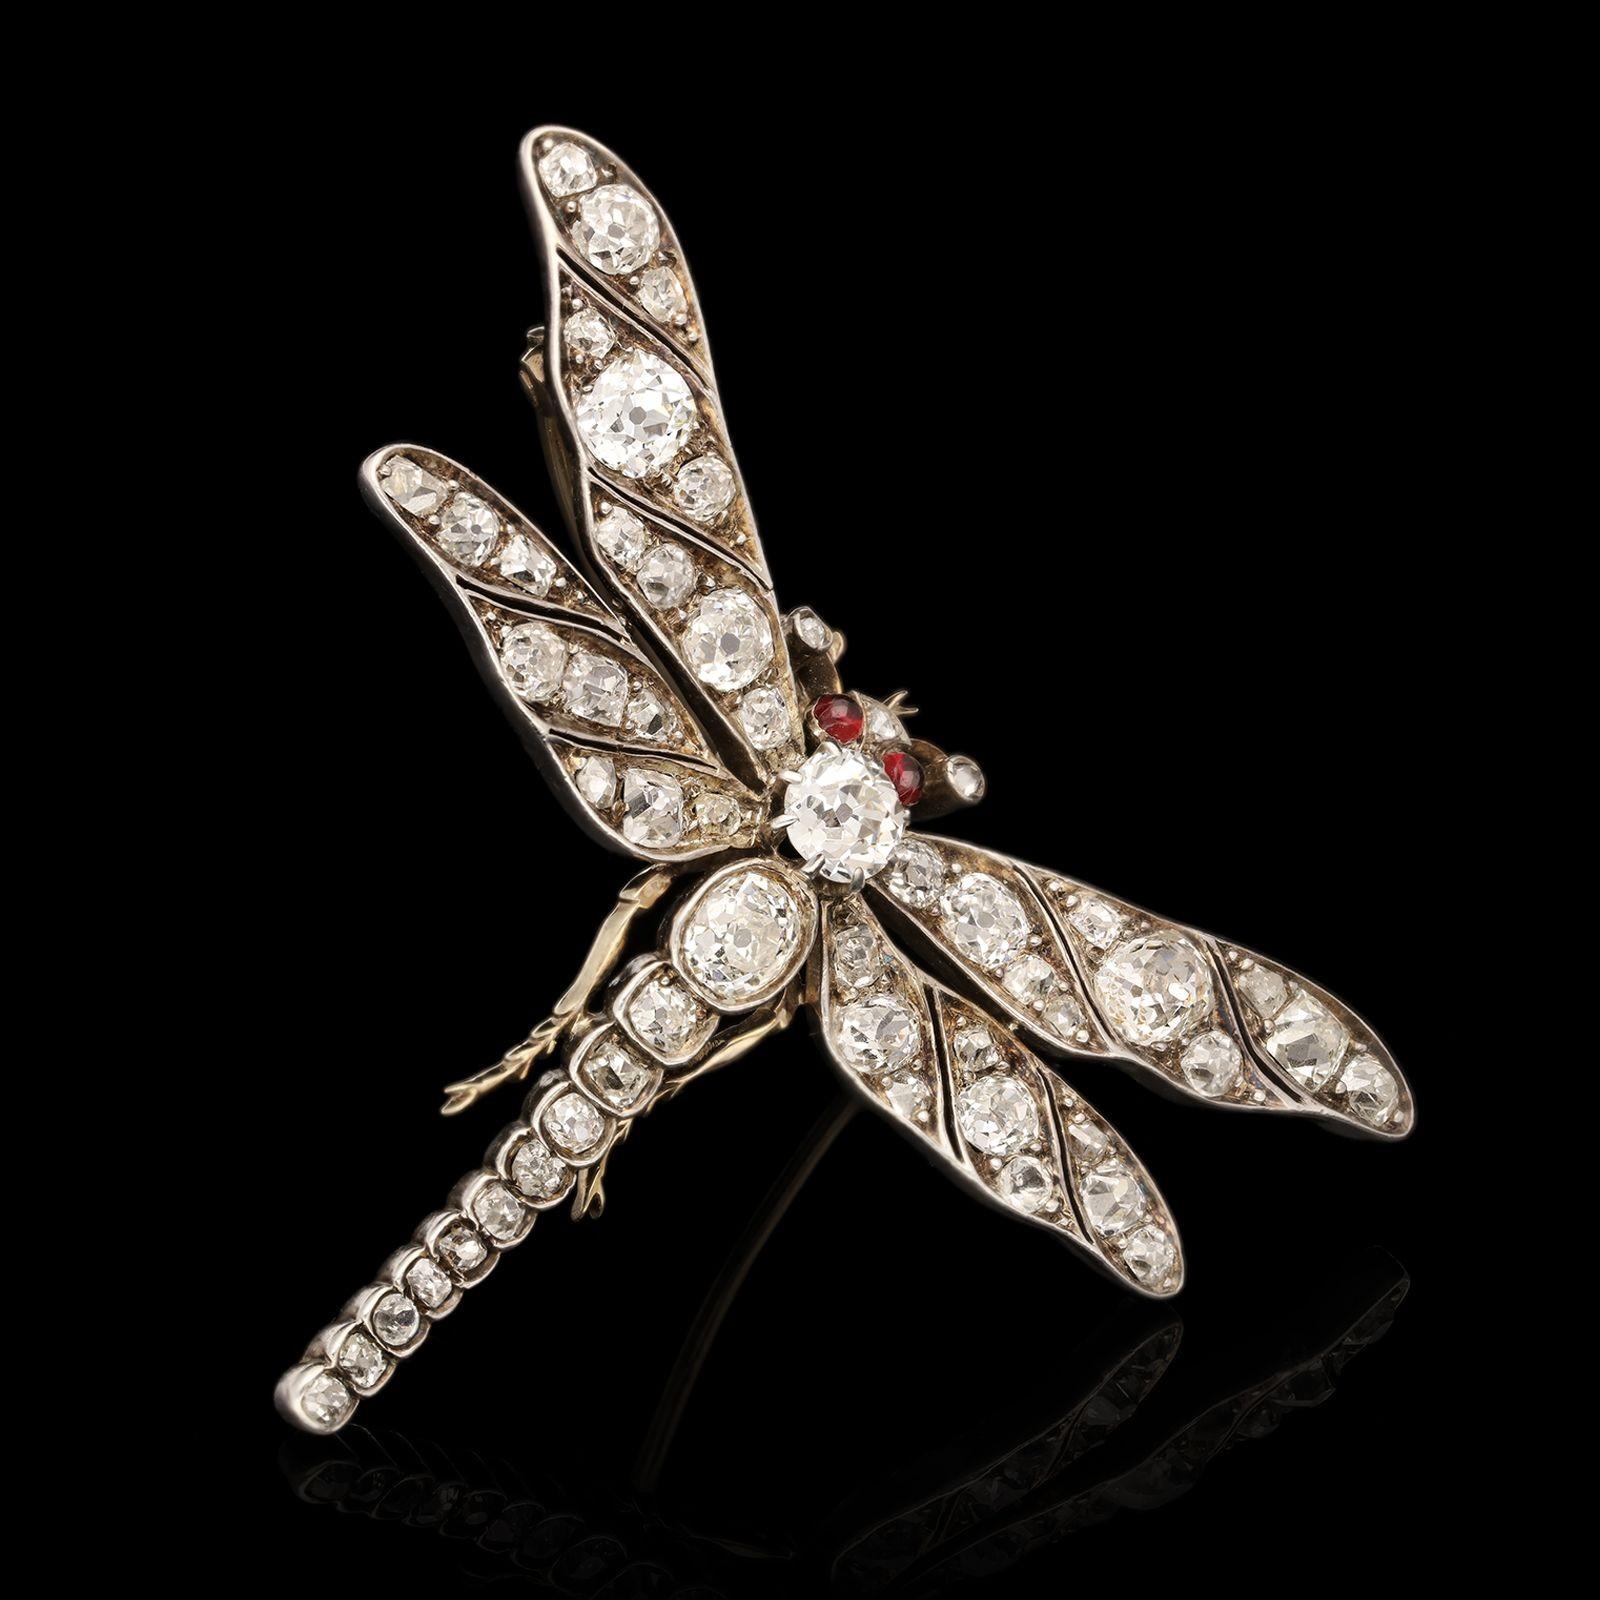 Eine schöne viktorianische Diamant-Libellen-Brosche aus den 1870er Jahren. Das durchbrochene Design ist realistisch in Silber und Gold modelliert und zeigt eine Libelle im Flug mit ausgebreiteten Flügeln, der sich verjüngende Körper und die Flügel